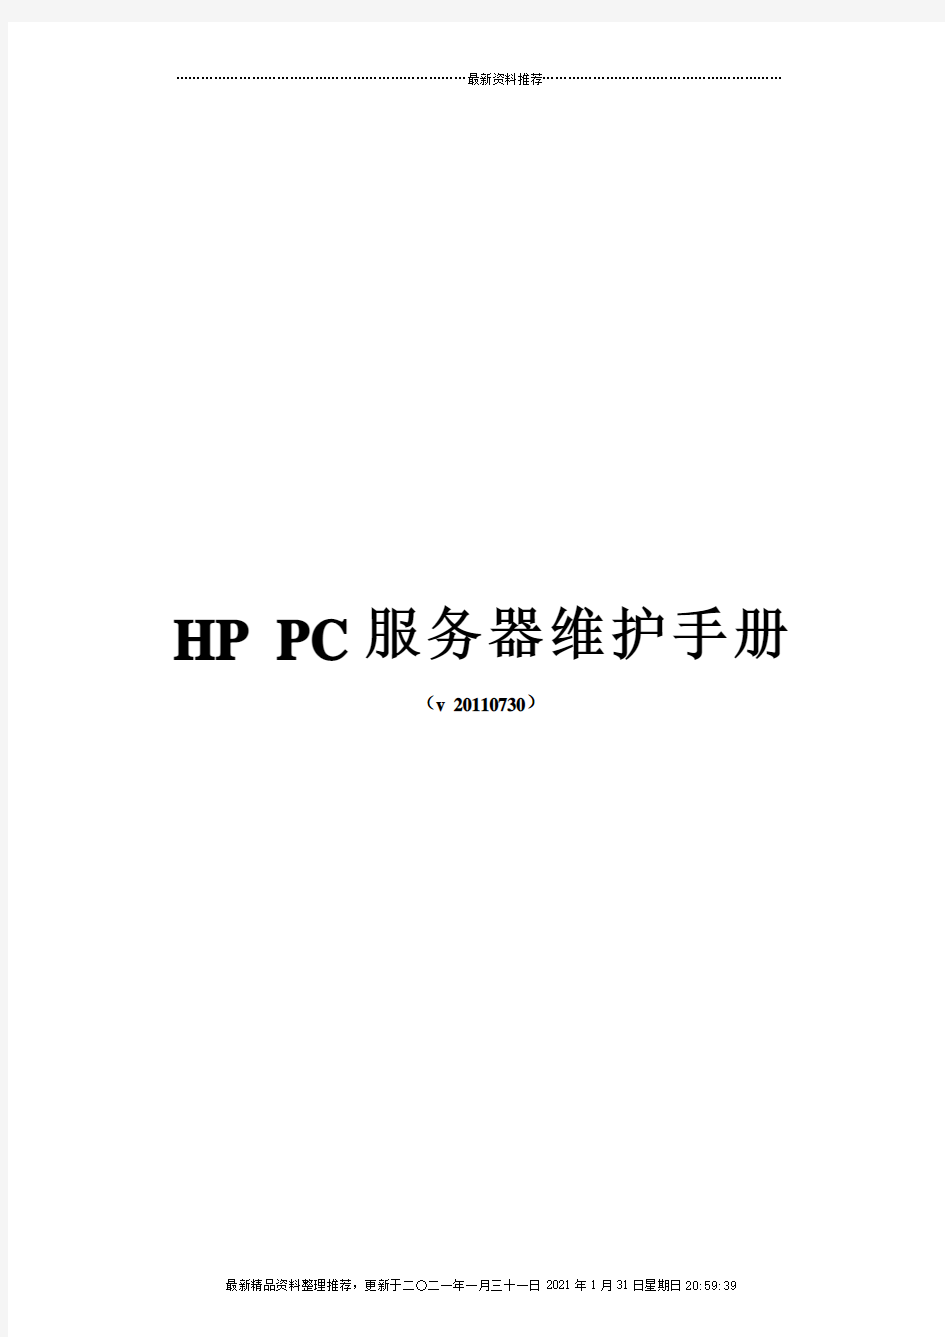 HPProLiantDL系列PC服务器维护手册